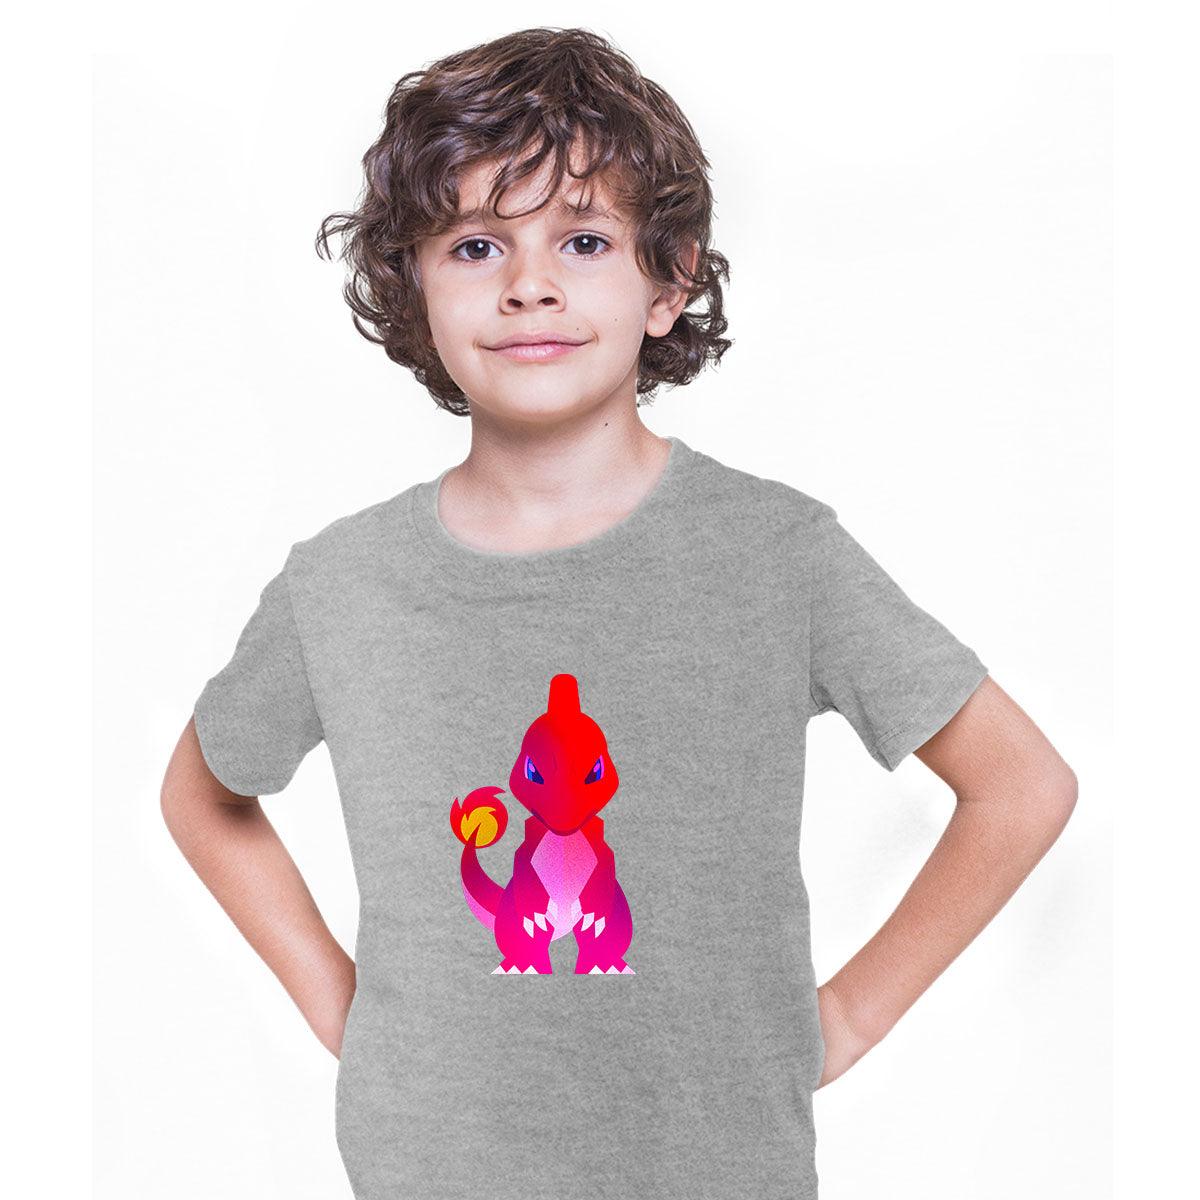 Charmeleon Pokemon Go T-shirt for Kids Boys Girls Brand New - Kuzi Tees